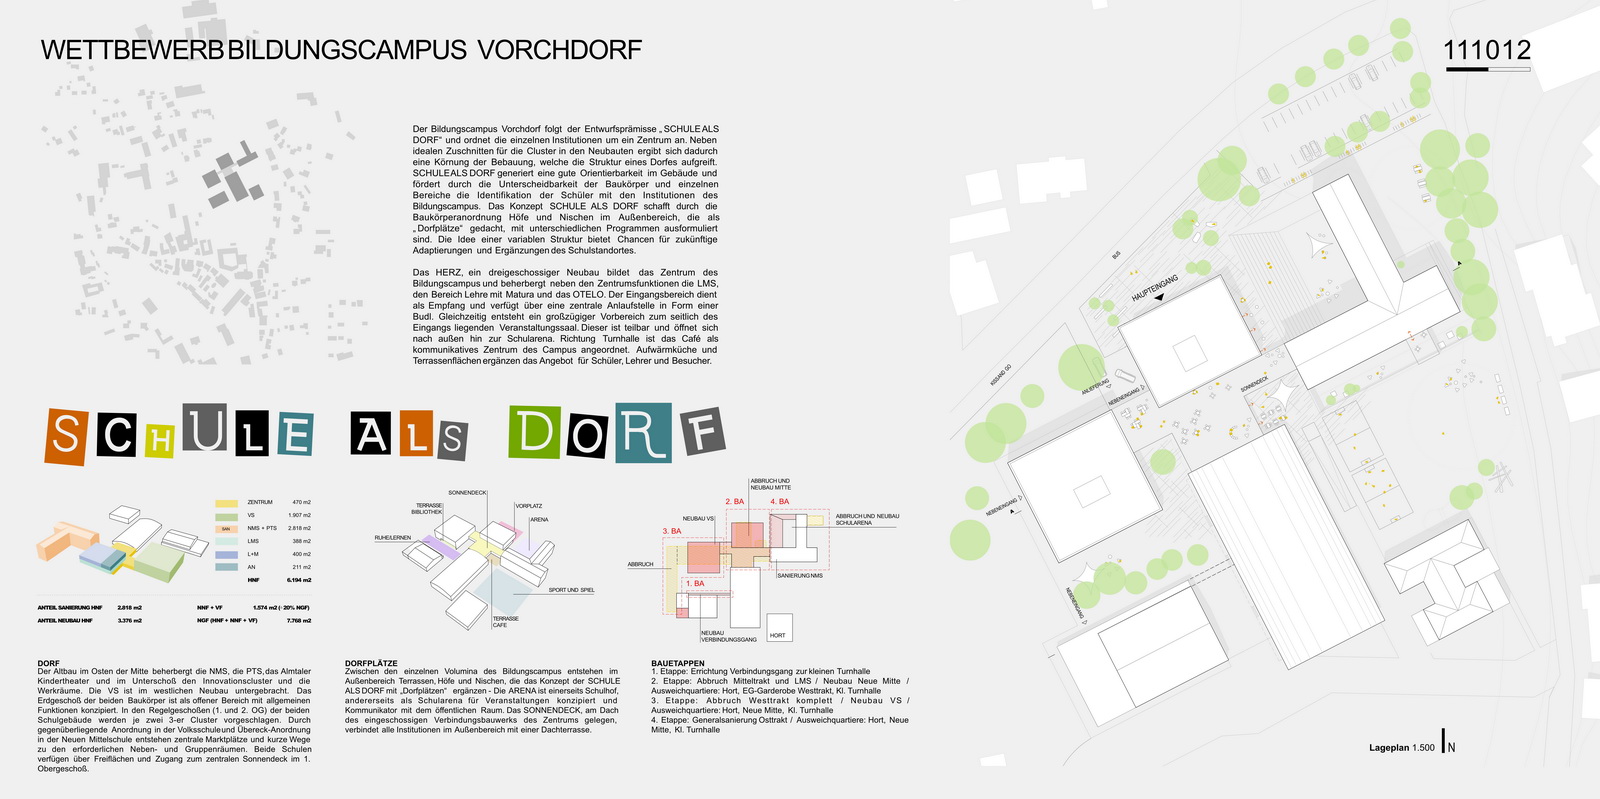 bhe-architektur-Wettbewerb-Bildungscampus-Vorchdorf-Schule-als-Dorf-1